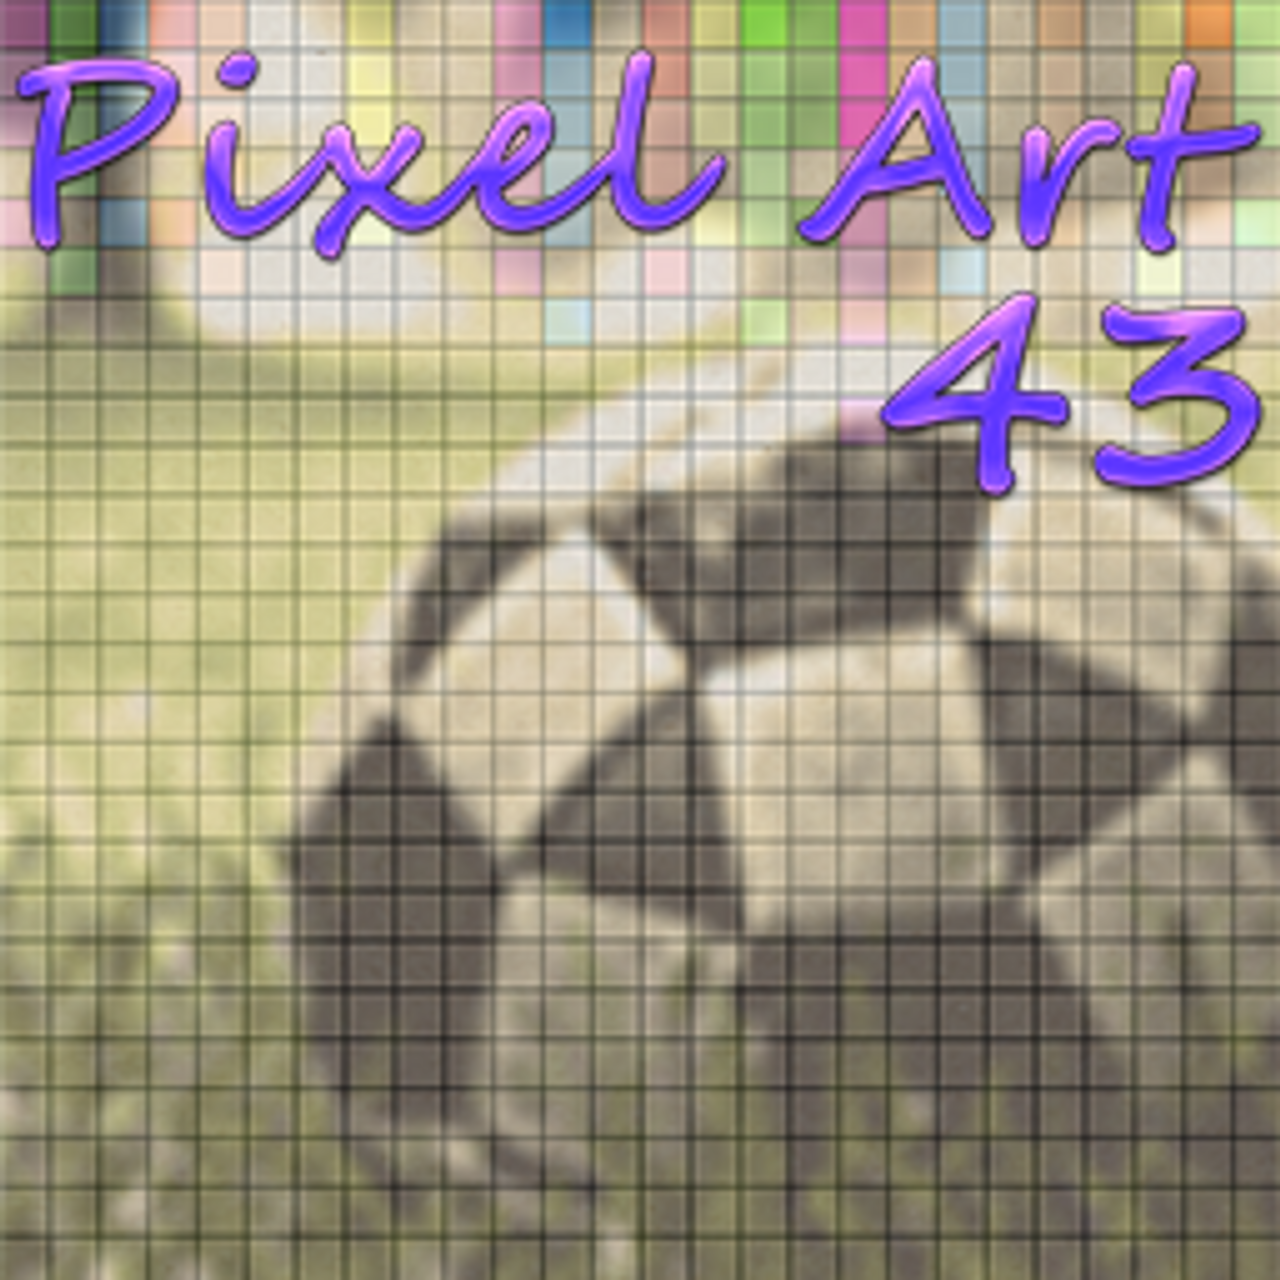 Pixel Art 43